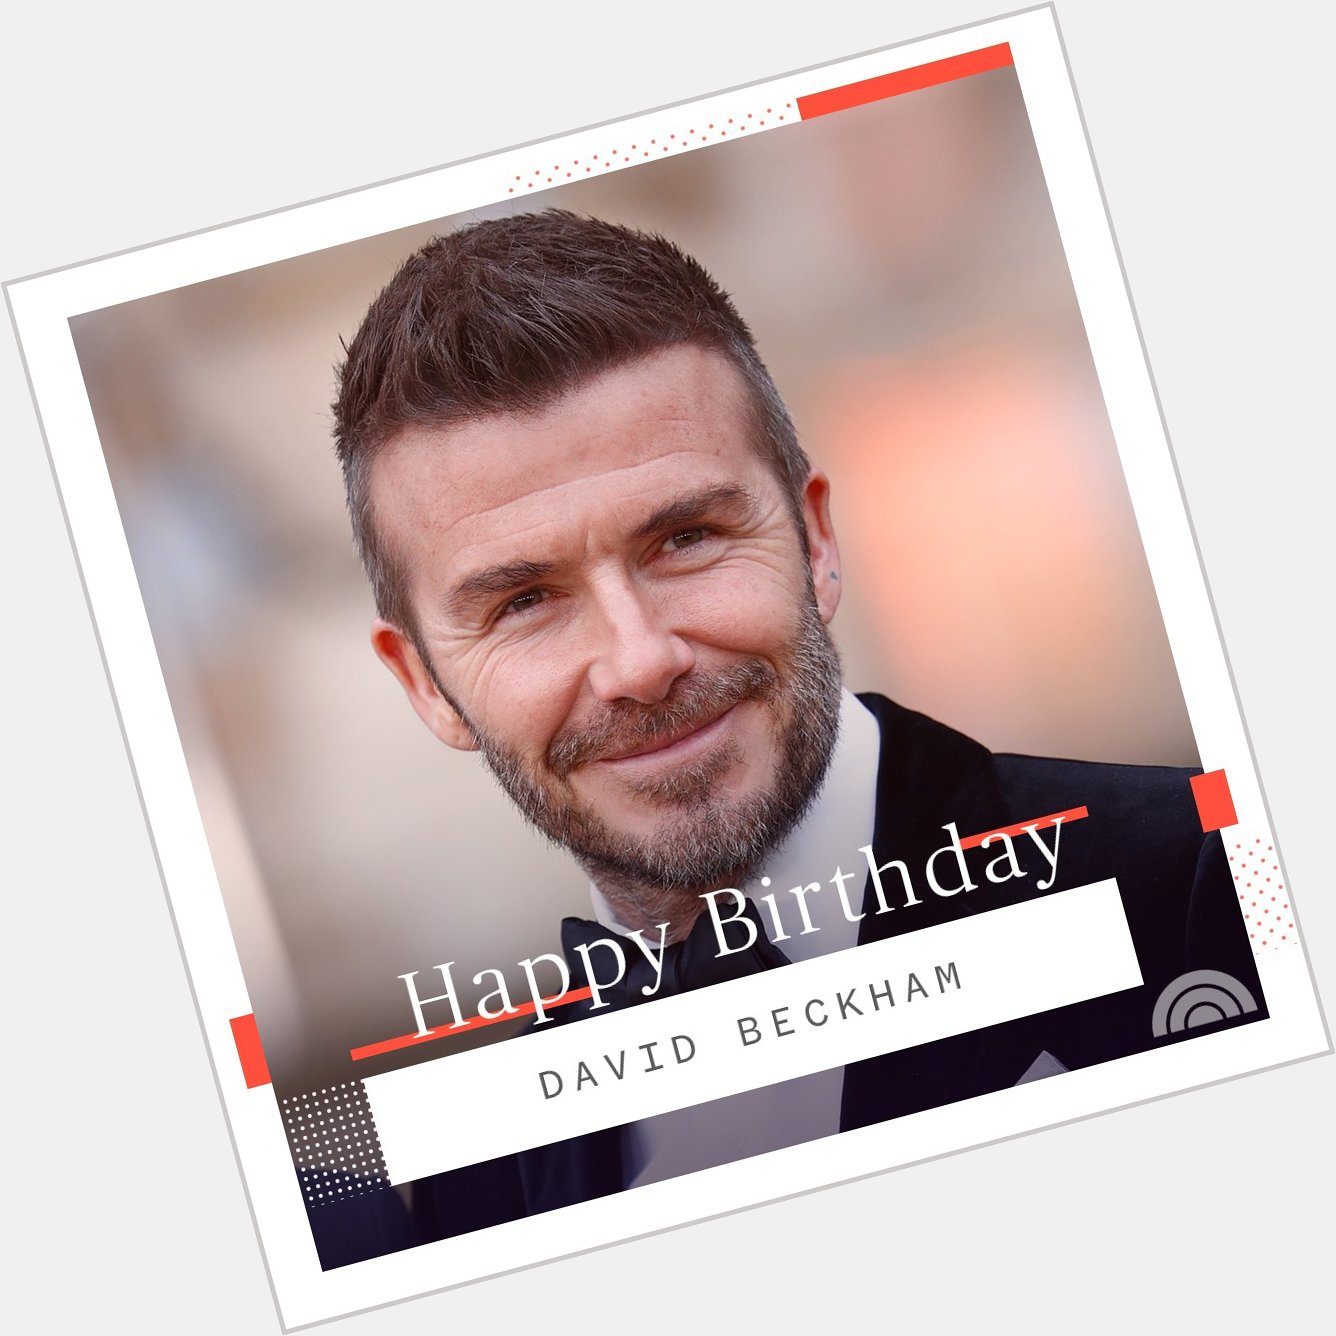 Happy birthday, David Beckham! 